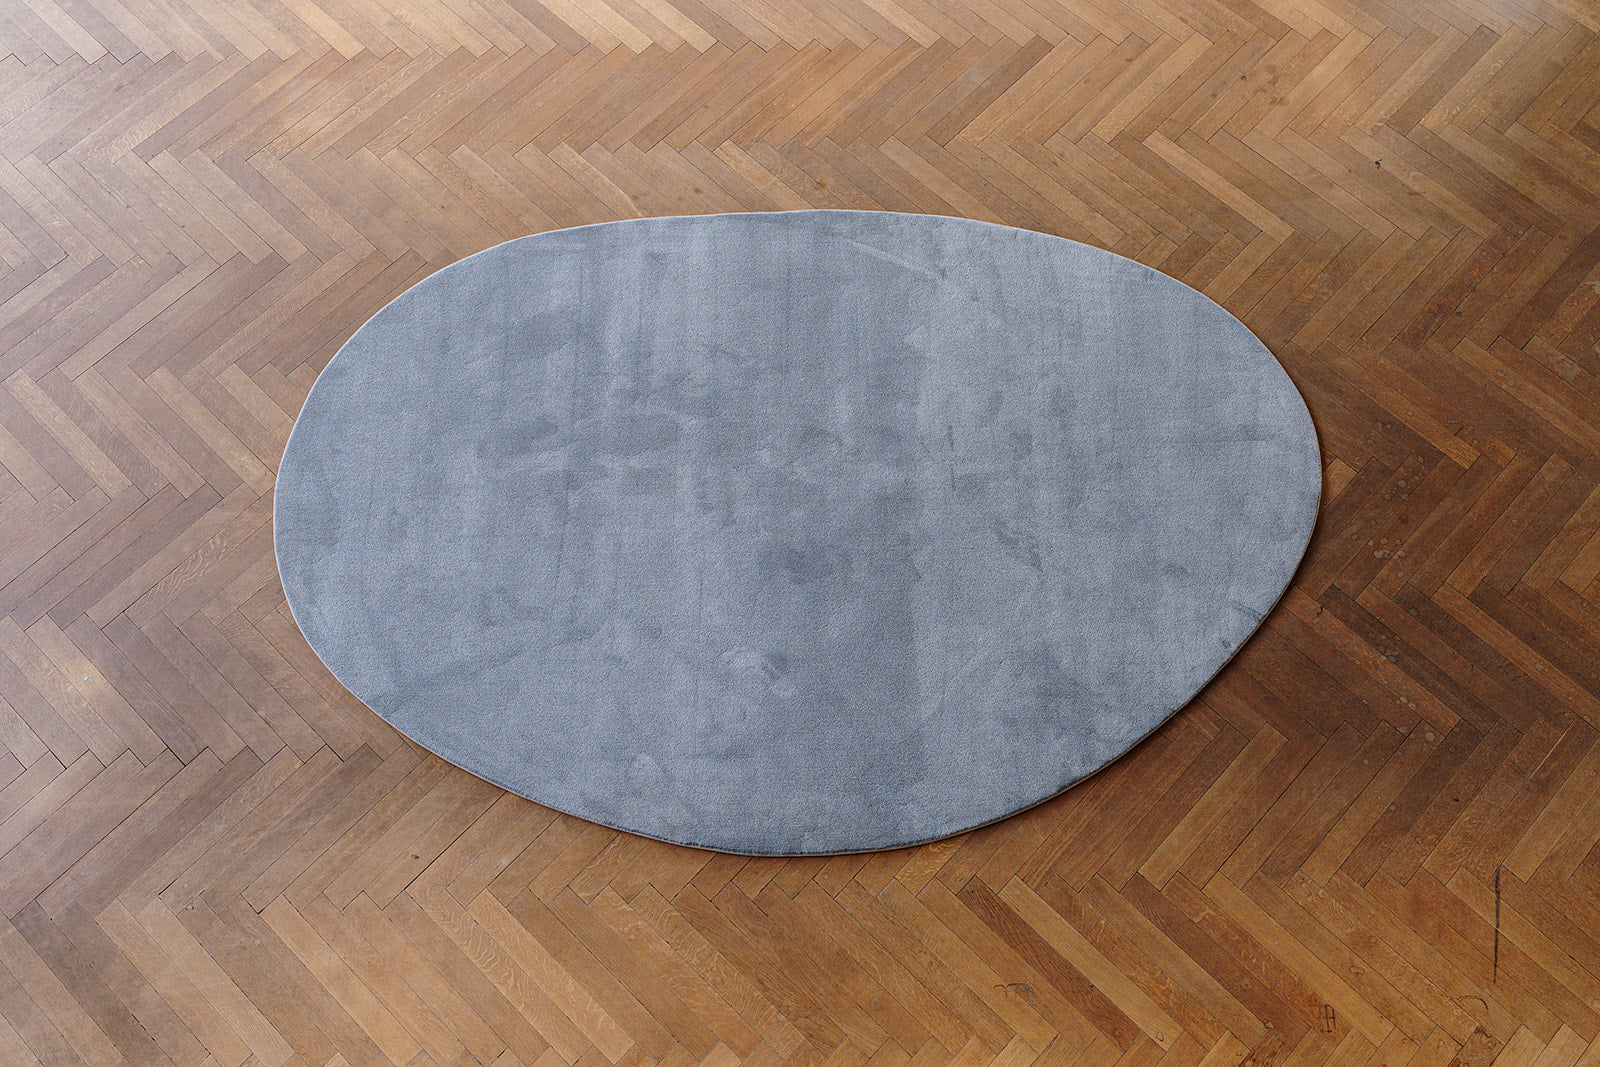 Bovenaanzicht pebble grijskleurig (stone) ecologisch tapijt op maat, op parket vloer.